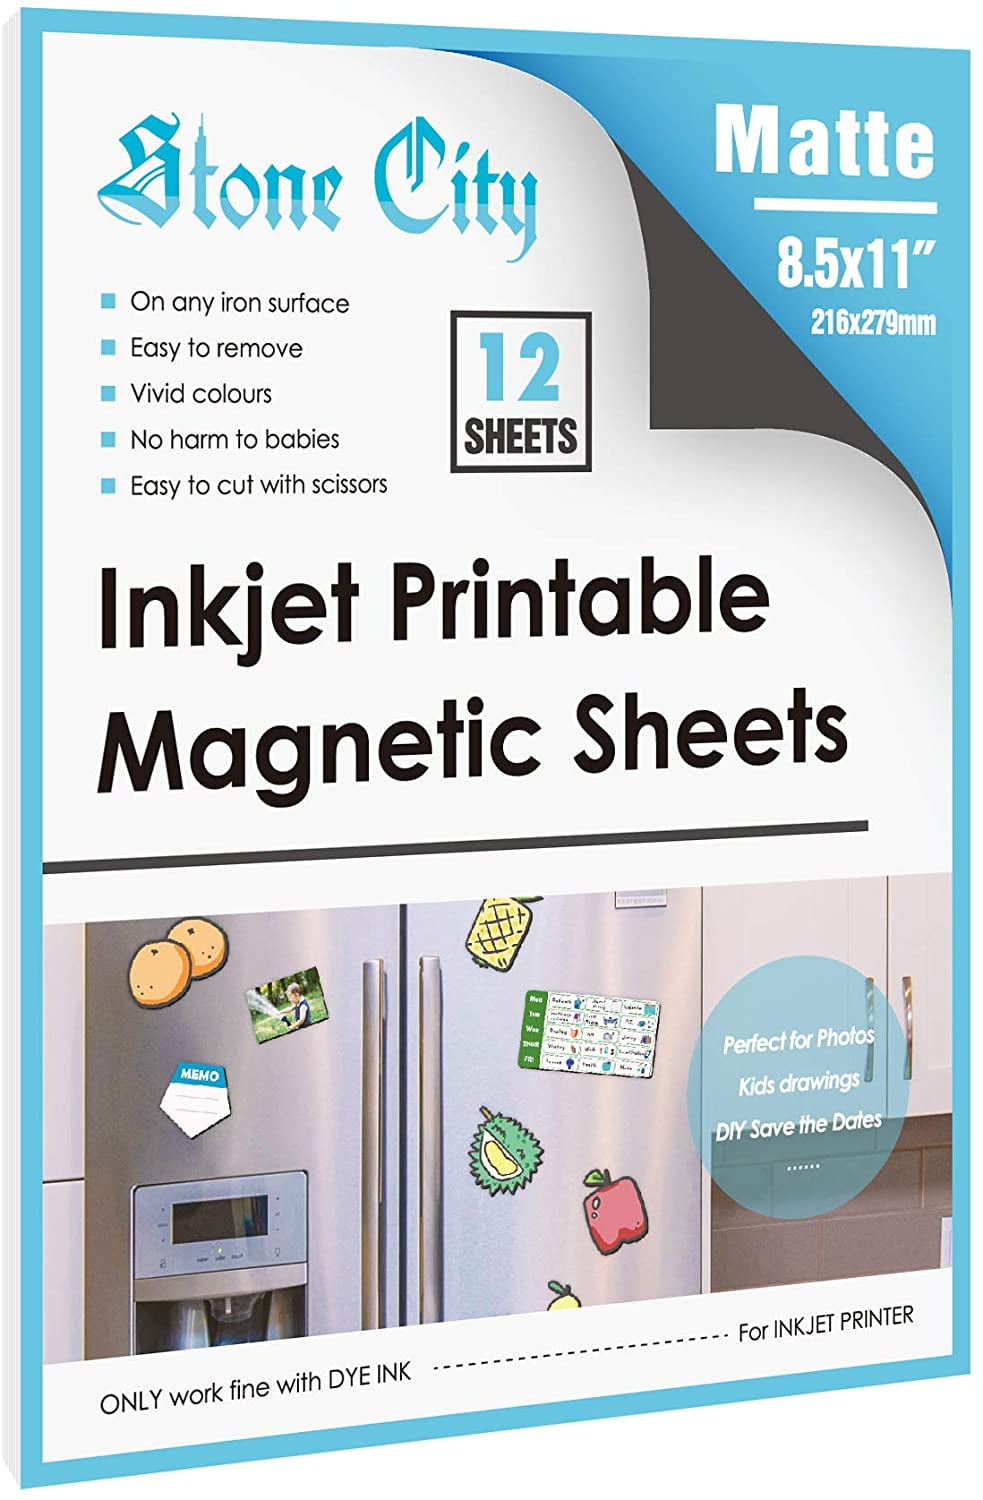 Glossy White Printable Magnet Paper 25 Sheets for Inkjet Printer